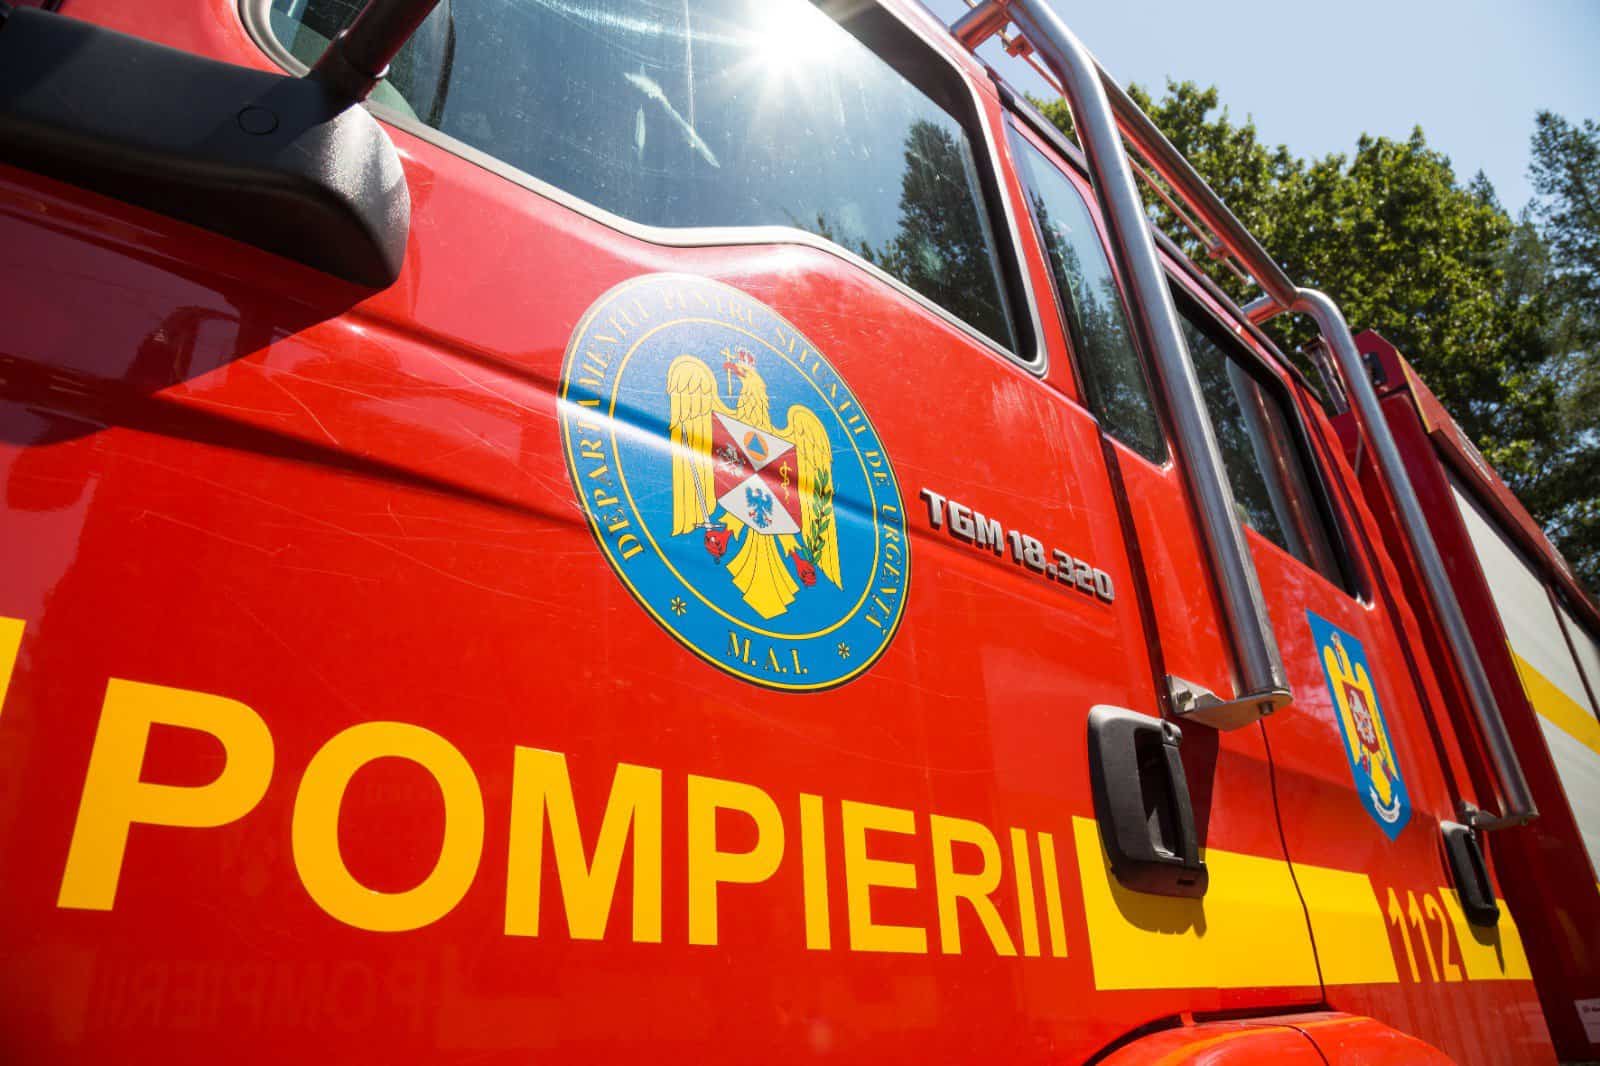 56 de pompieri români îi vor schimba pe colegii lor